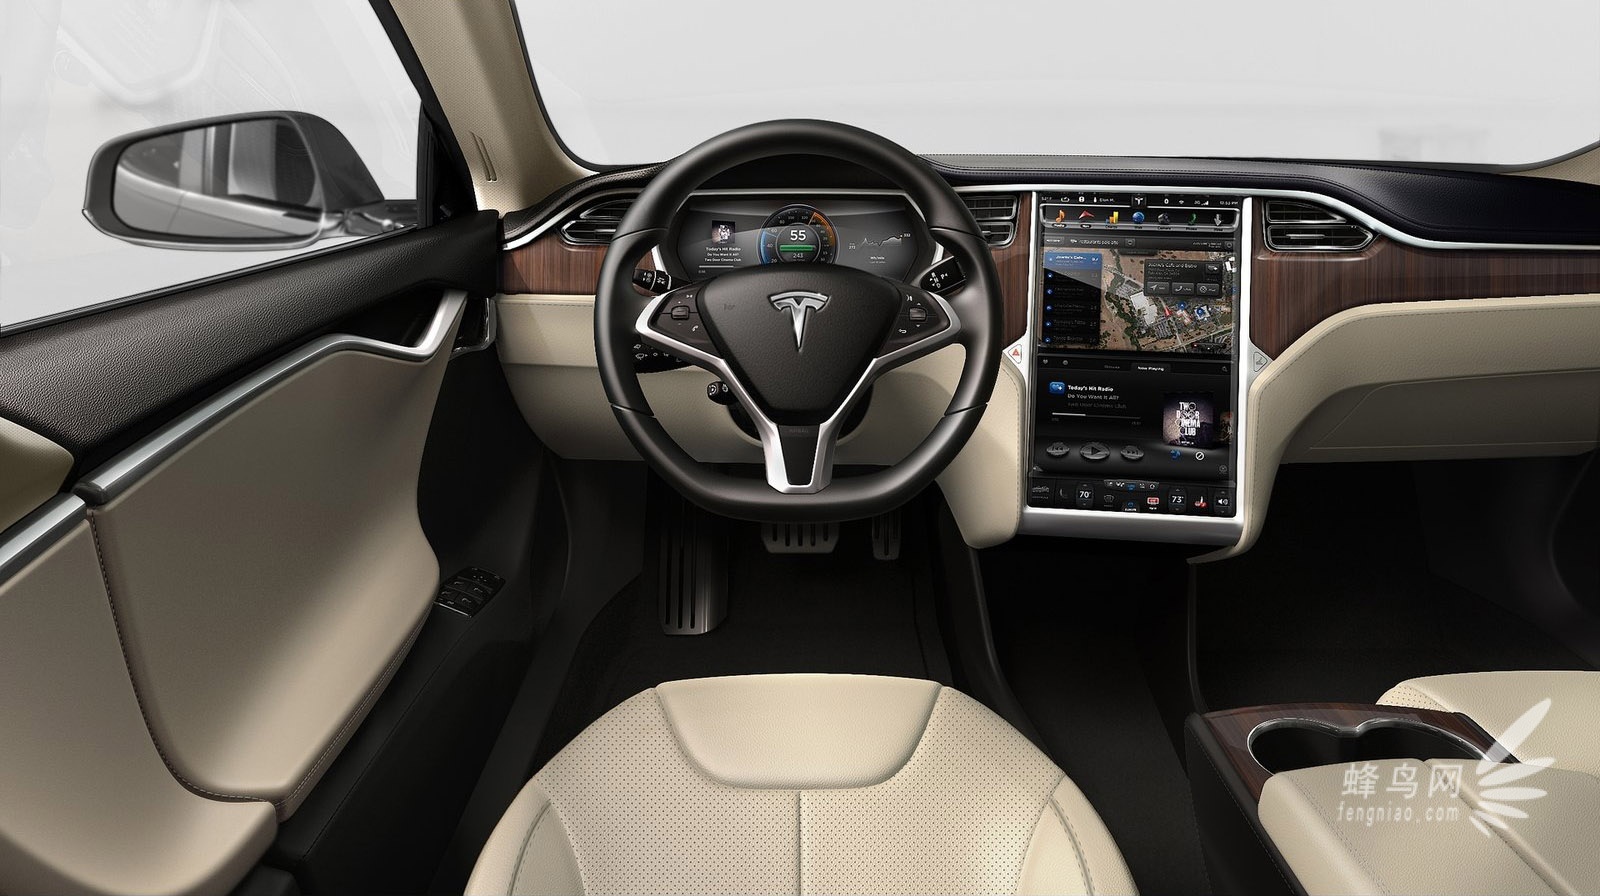  綯Tesla Model S